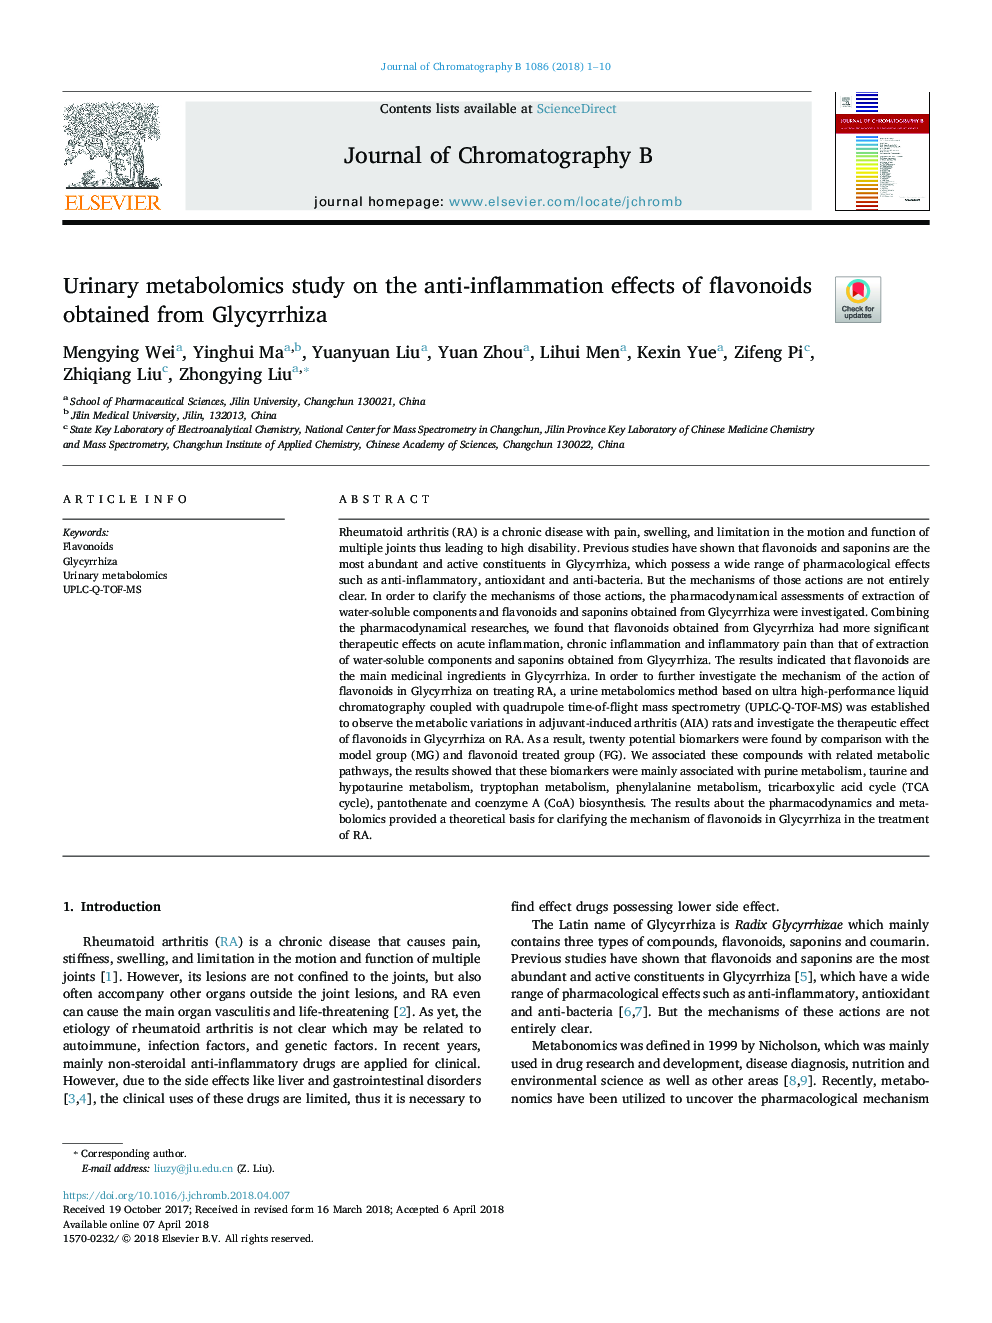 بررسی متابولوماتیک ادرار بر روی اثرات ضد التهابی فلاونوئیدها به دست آمده از گلیسیریزا 